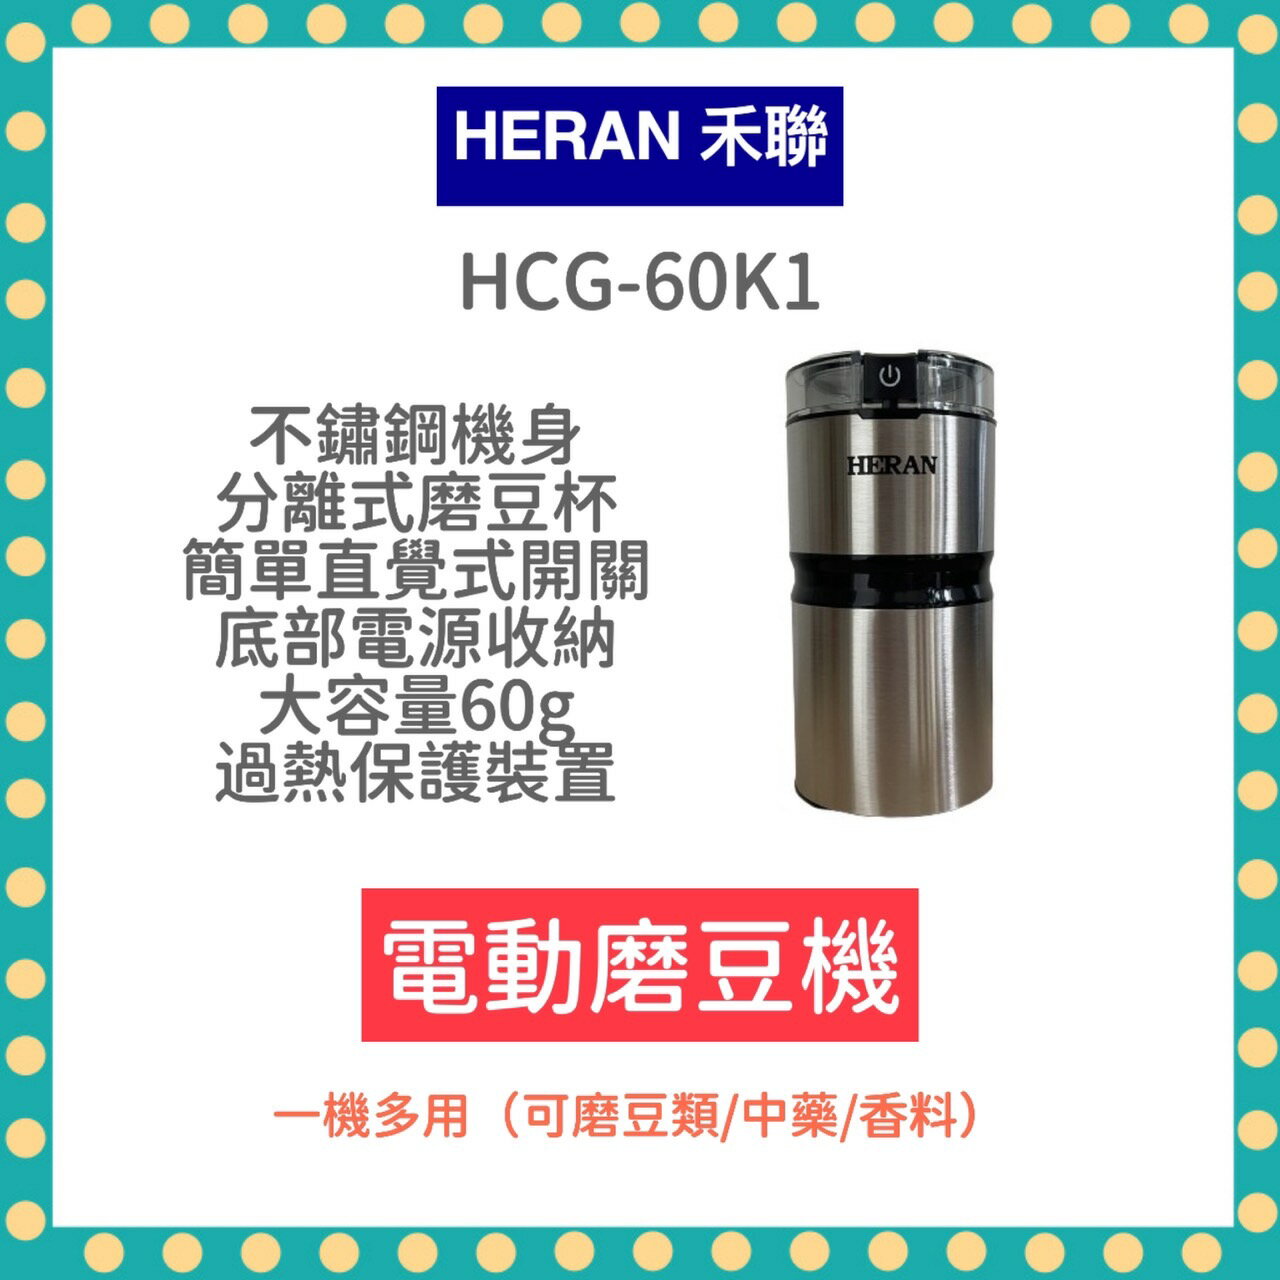 【快速出貨 附發票】禾聯 簡約輕巧電動磨豆機 HCG-60K1 磨豆機 咖啡機 研磨 咖啡豆 電動磨豆機 咖啡